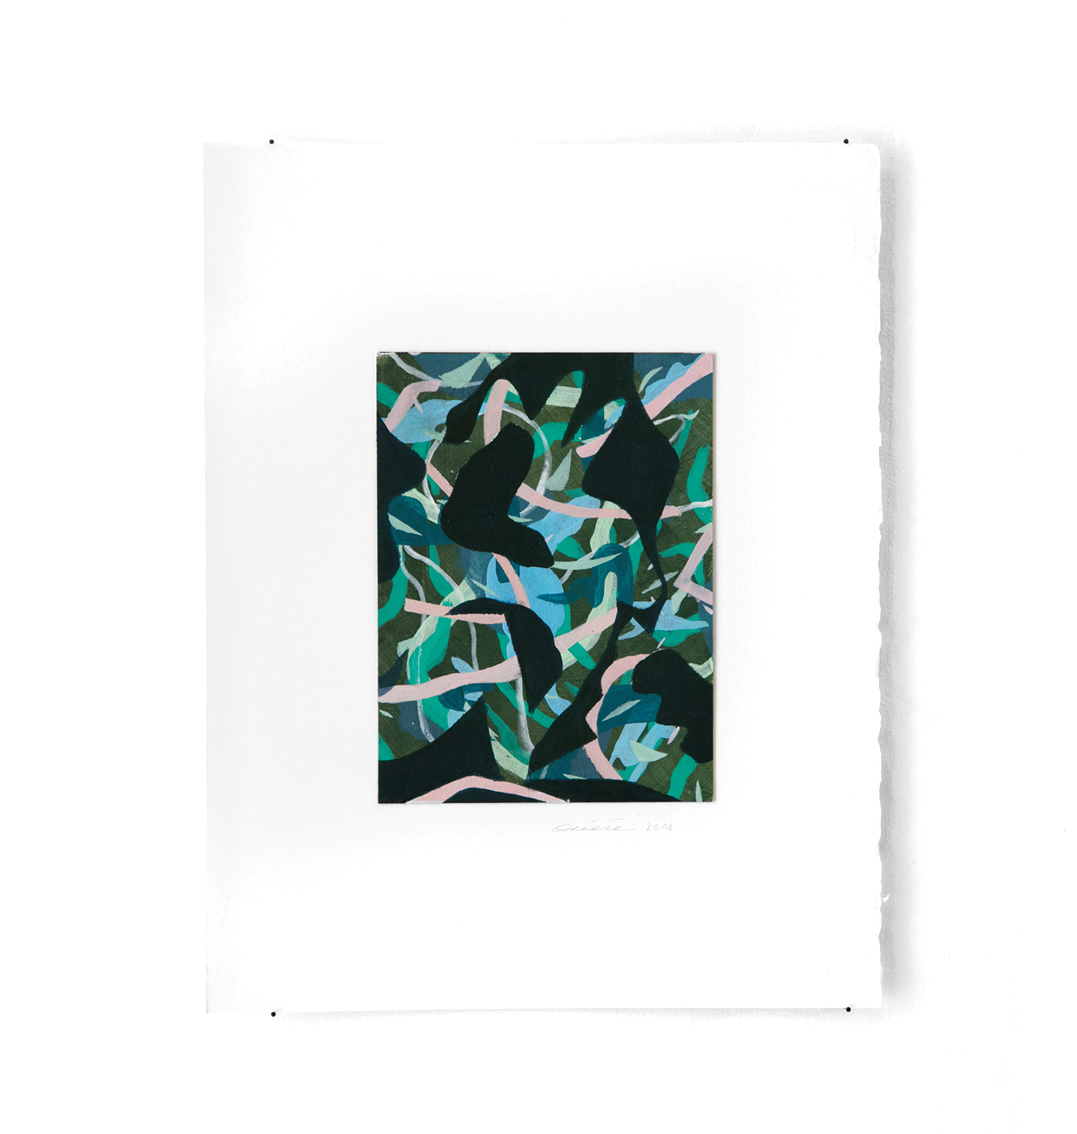 Vagues - Peinture acrylique sur carton - 33 x 44 cm - 2017